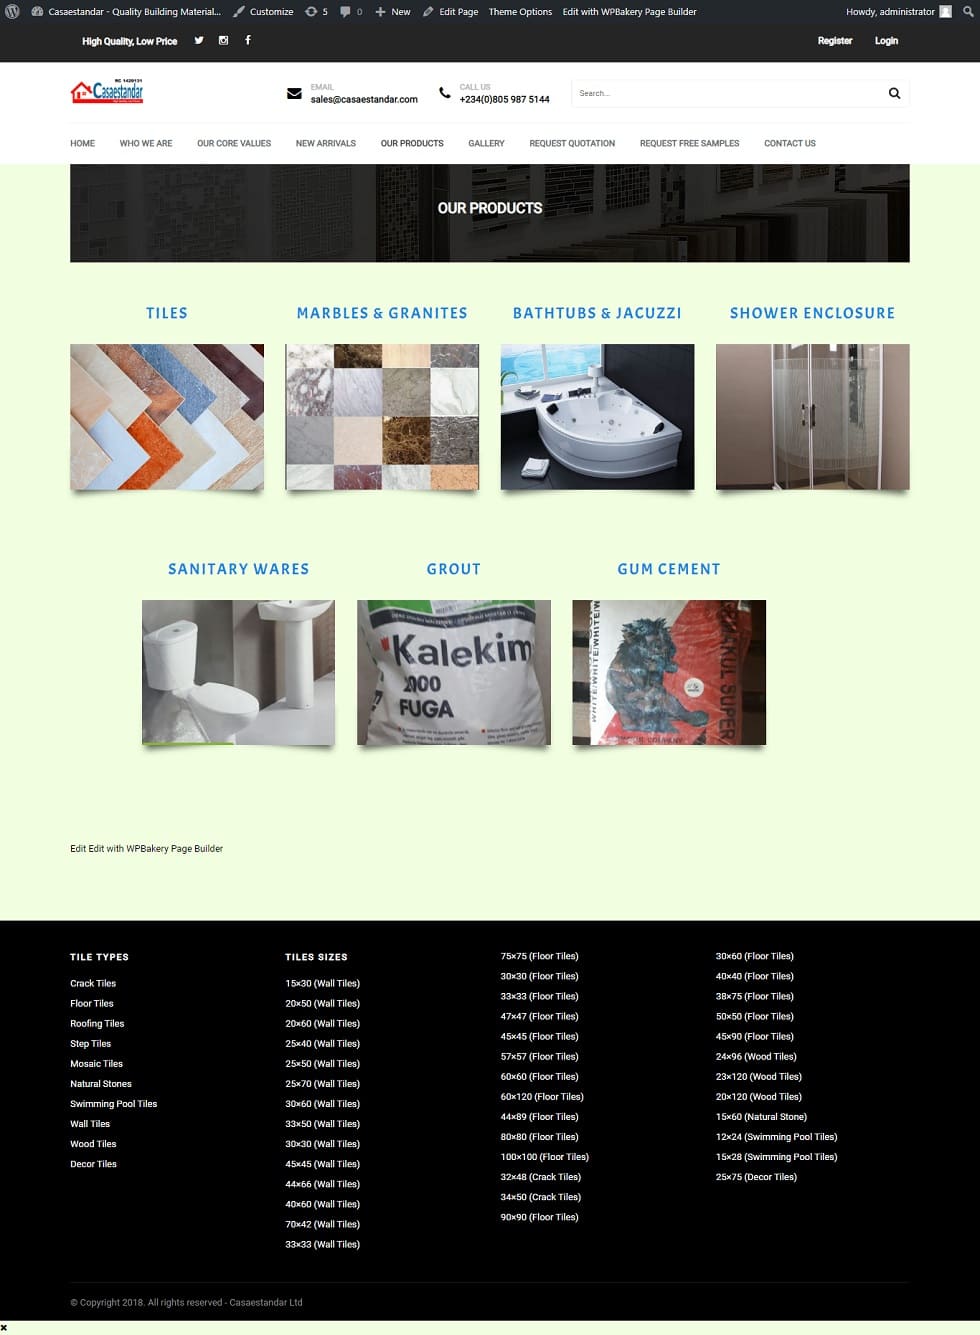 Capipar nigeria website design project